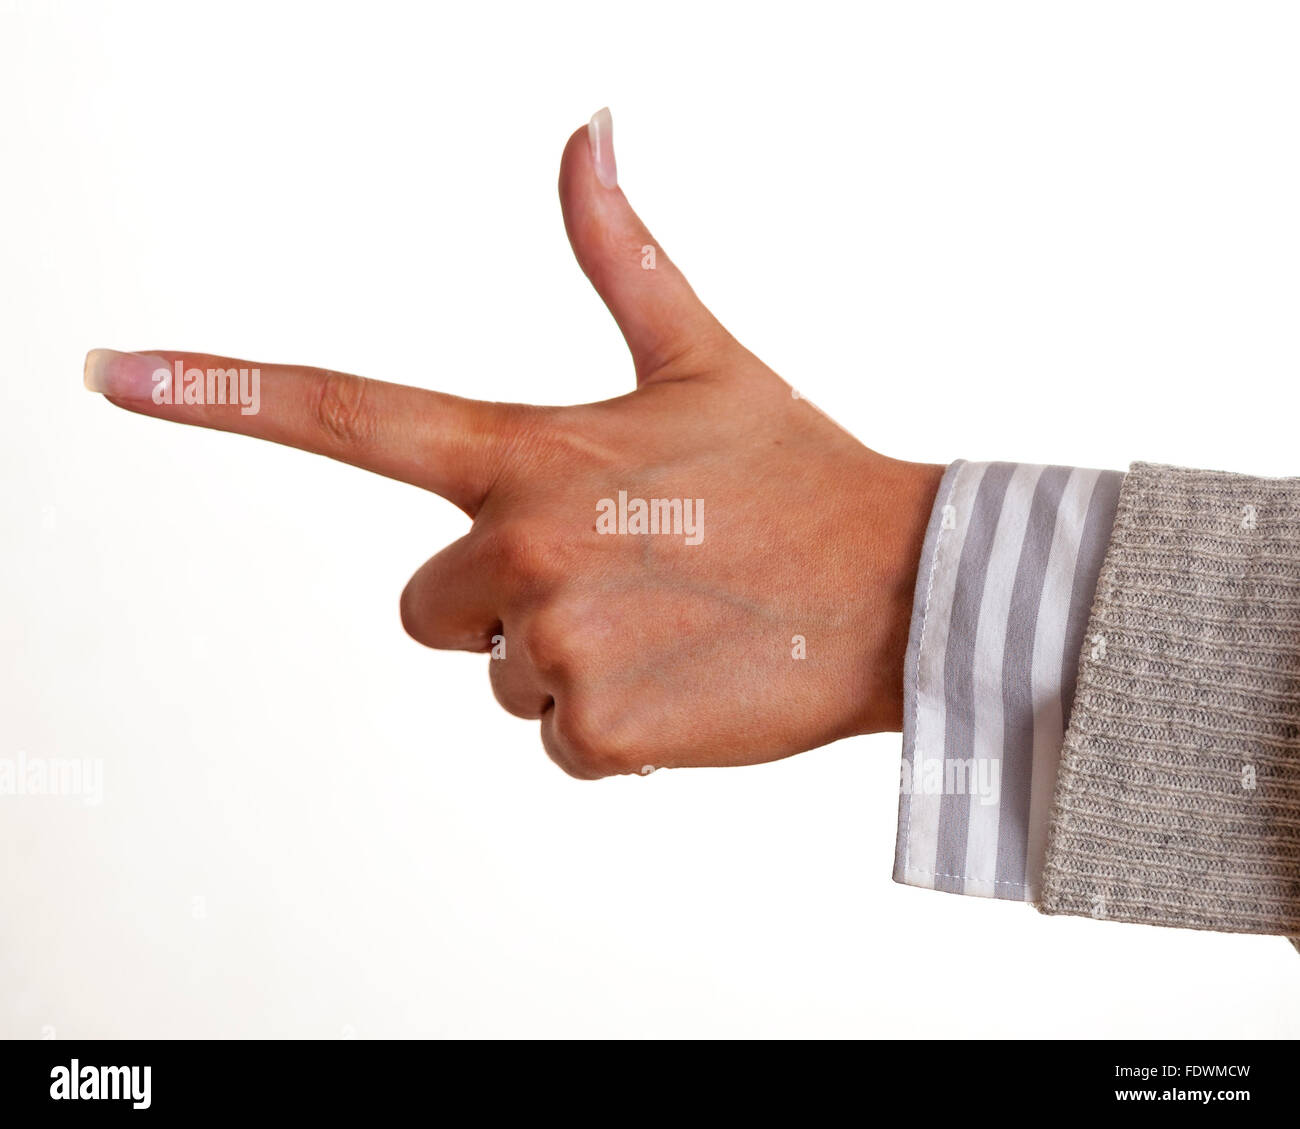 Nahaufnahme des Woman's Hand und Zeigefinger Richtung, auf weißem Hintergrund Model Release: Ja. Property Release: Nein. Stockfoto